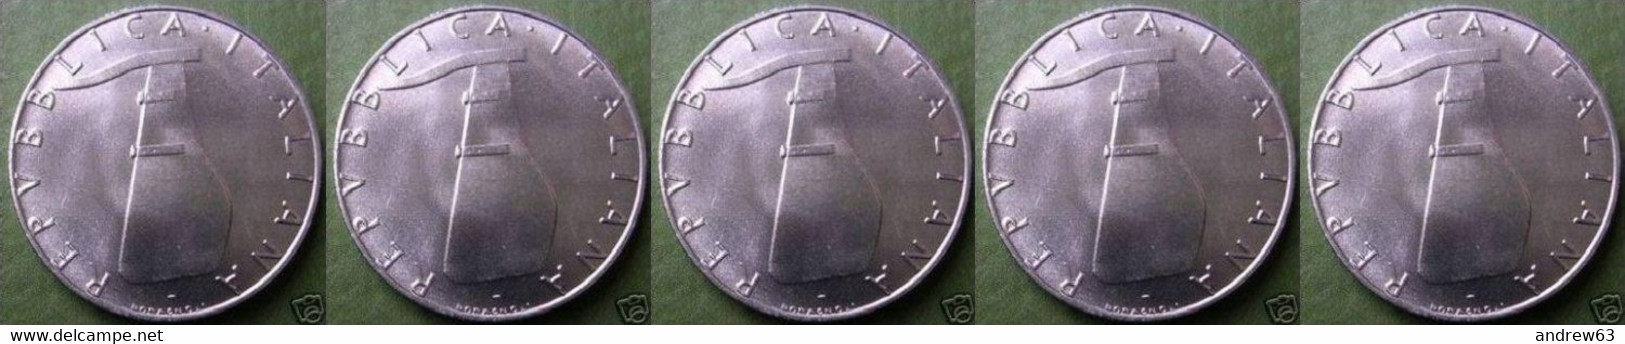 ITALIA - Lire 5 1975 - FDC/Unc Da Rotolino/from Roll 5 Monete/5 Coins - 5 Lire